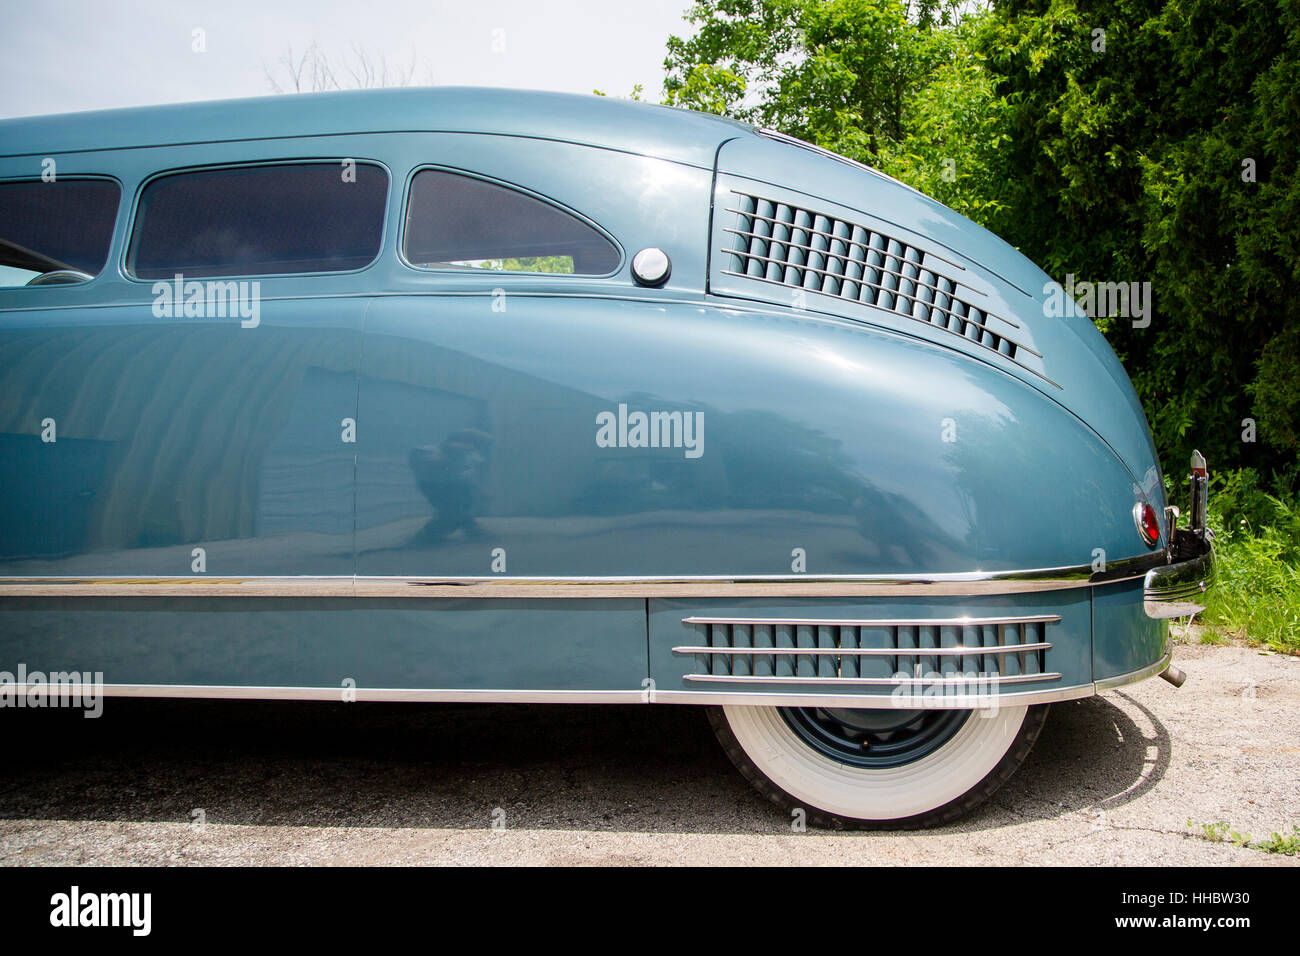 Un détail de l'extrémité arrière d'un scarabée 1936 fourgonnette automobile, conçu par William Stout. Banque D'Images